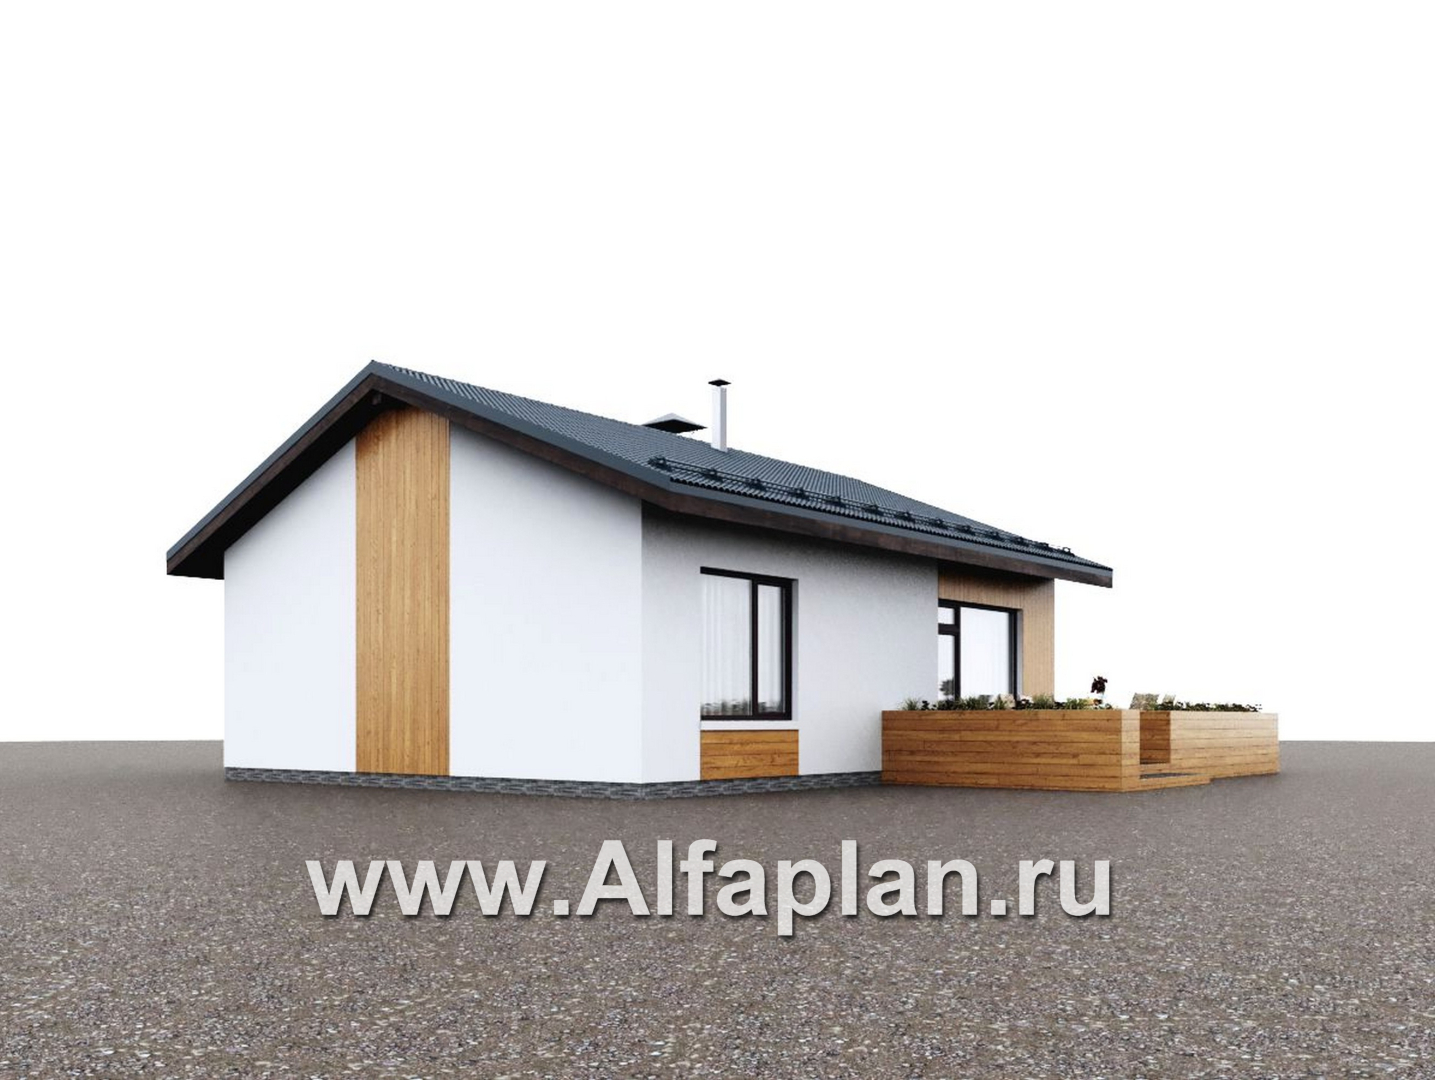 Проекты домов Альфаплан - "Литен" - проект простого одноэтажного дома с комфортной планировкой - дополнительное изображение №2